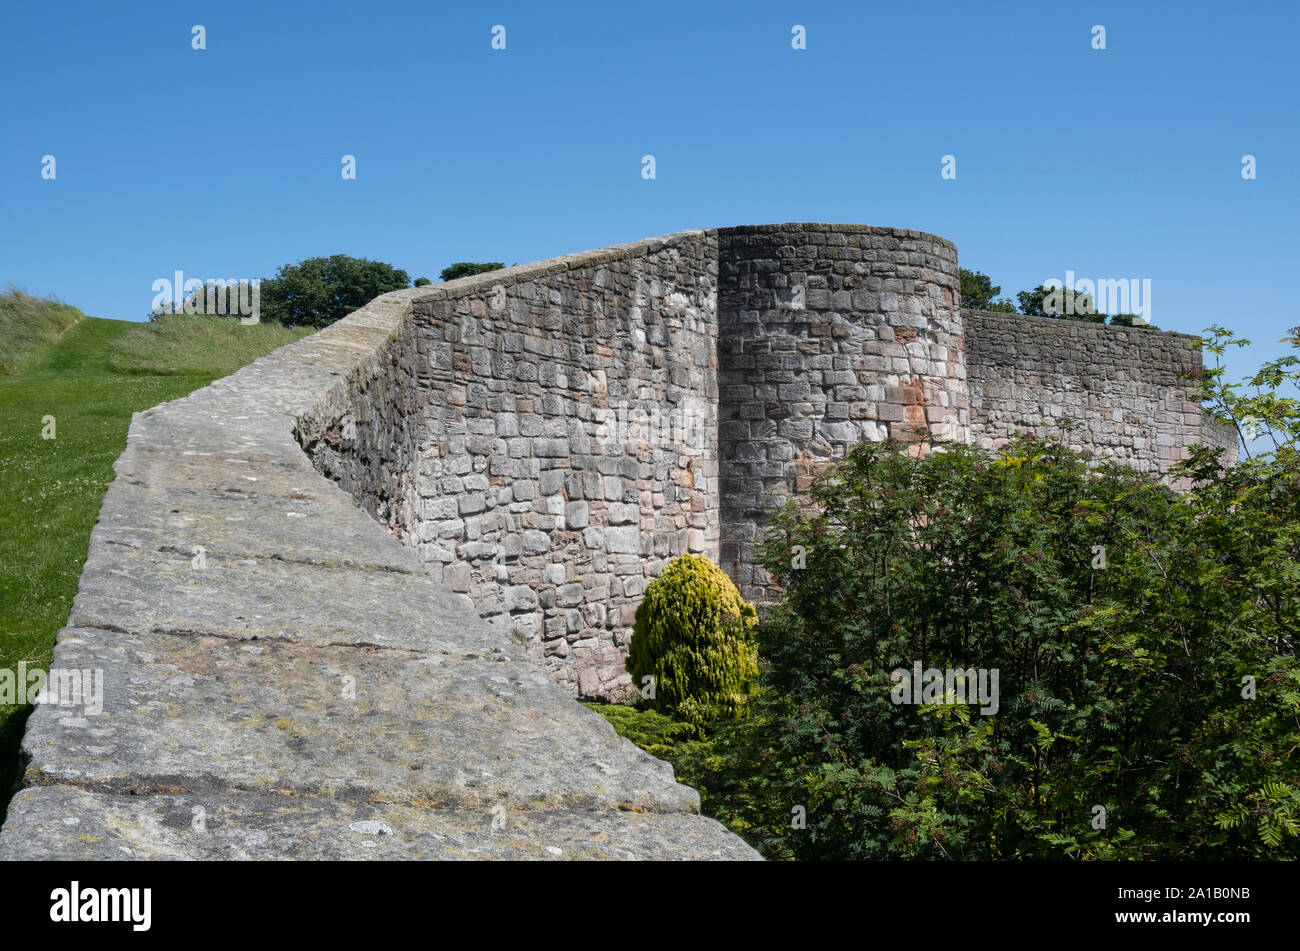 Fortificazione medievale cinta mura di pietra della città di Berwick-upon-Tweed inglese la città di confine in Northumberland Inghilterra Foto Stock